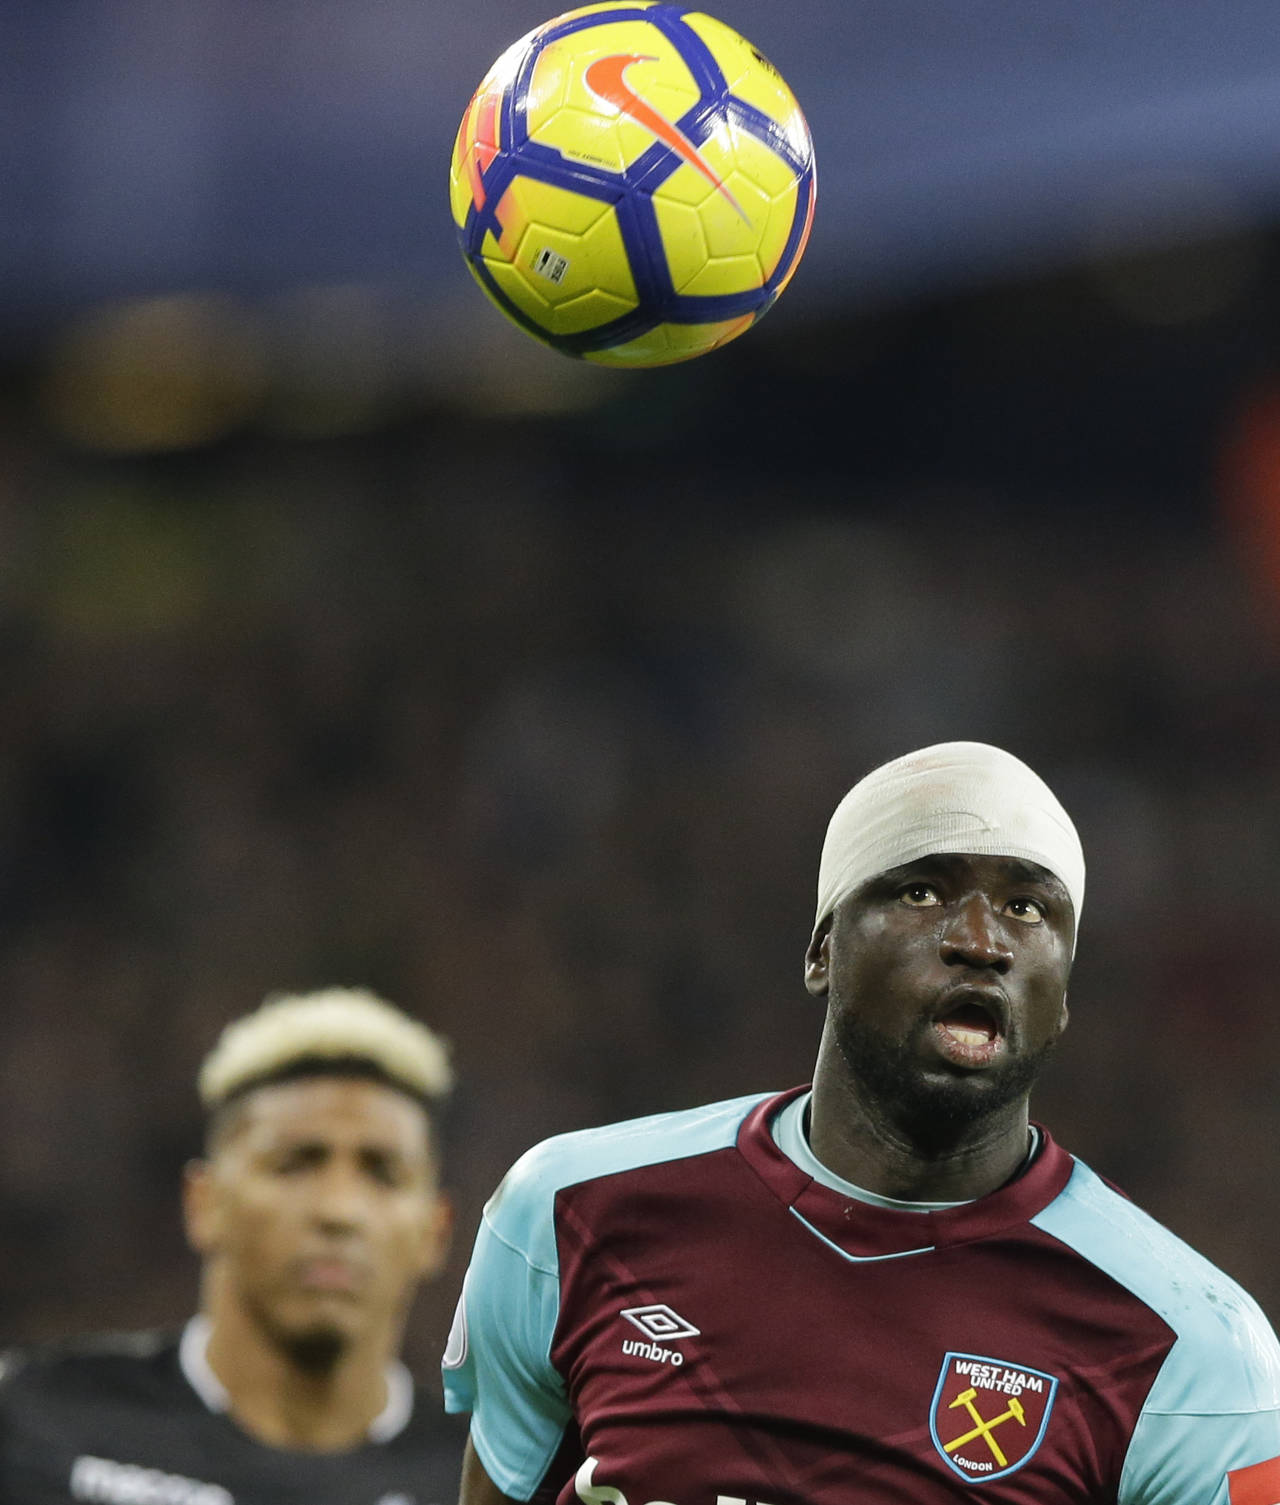 El senegalés de West Ham, Cheikhou Kouyaté, observa el balón durante un partido contra Crystal Palace. Investigan a West Ham por email racista